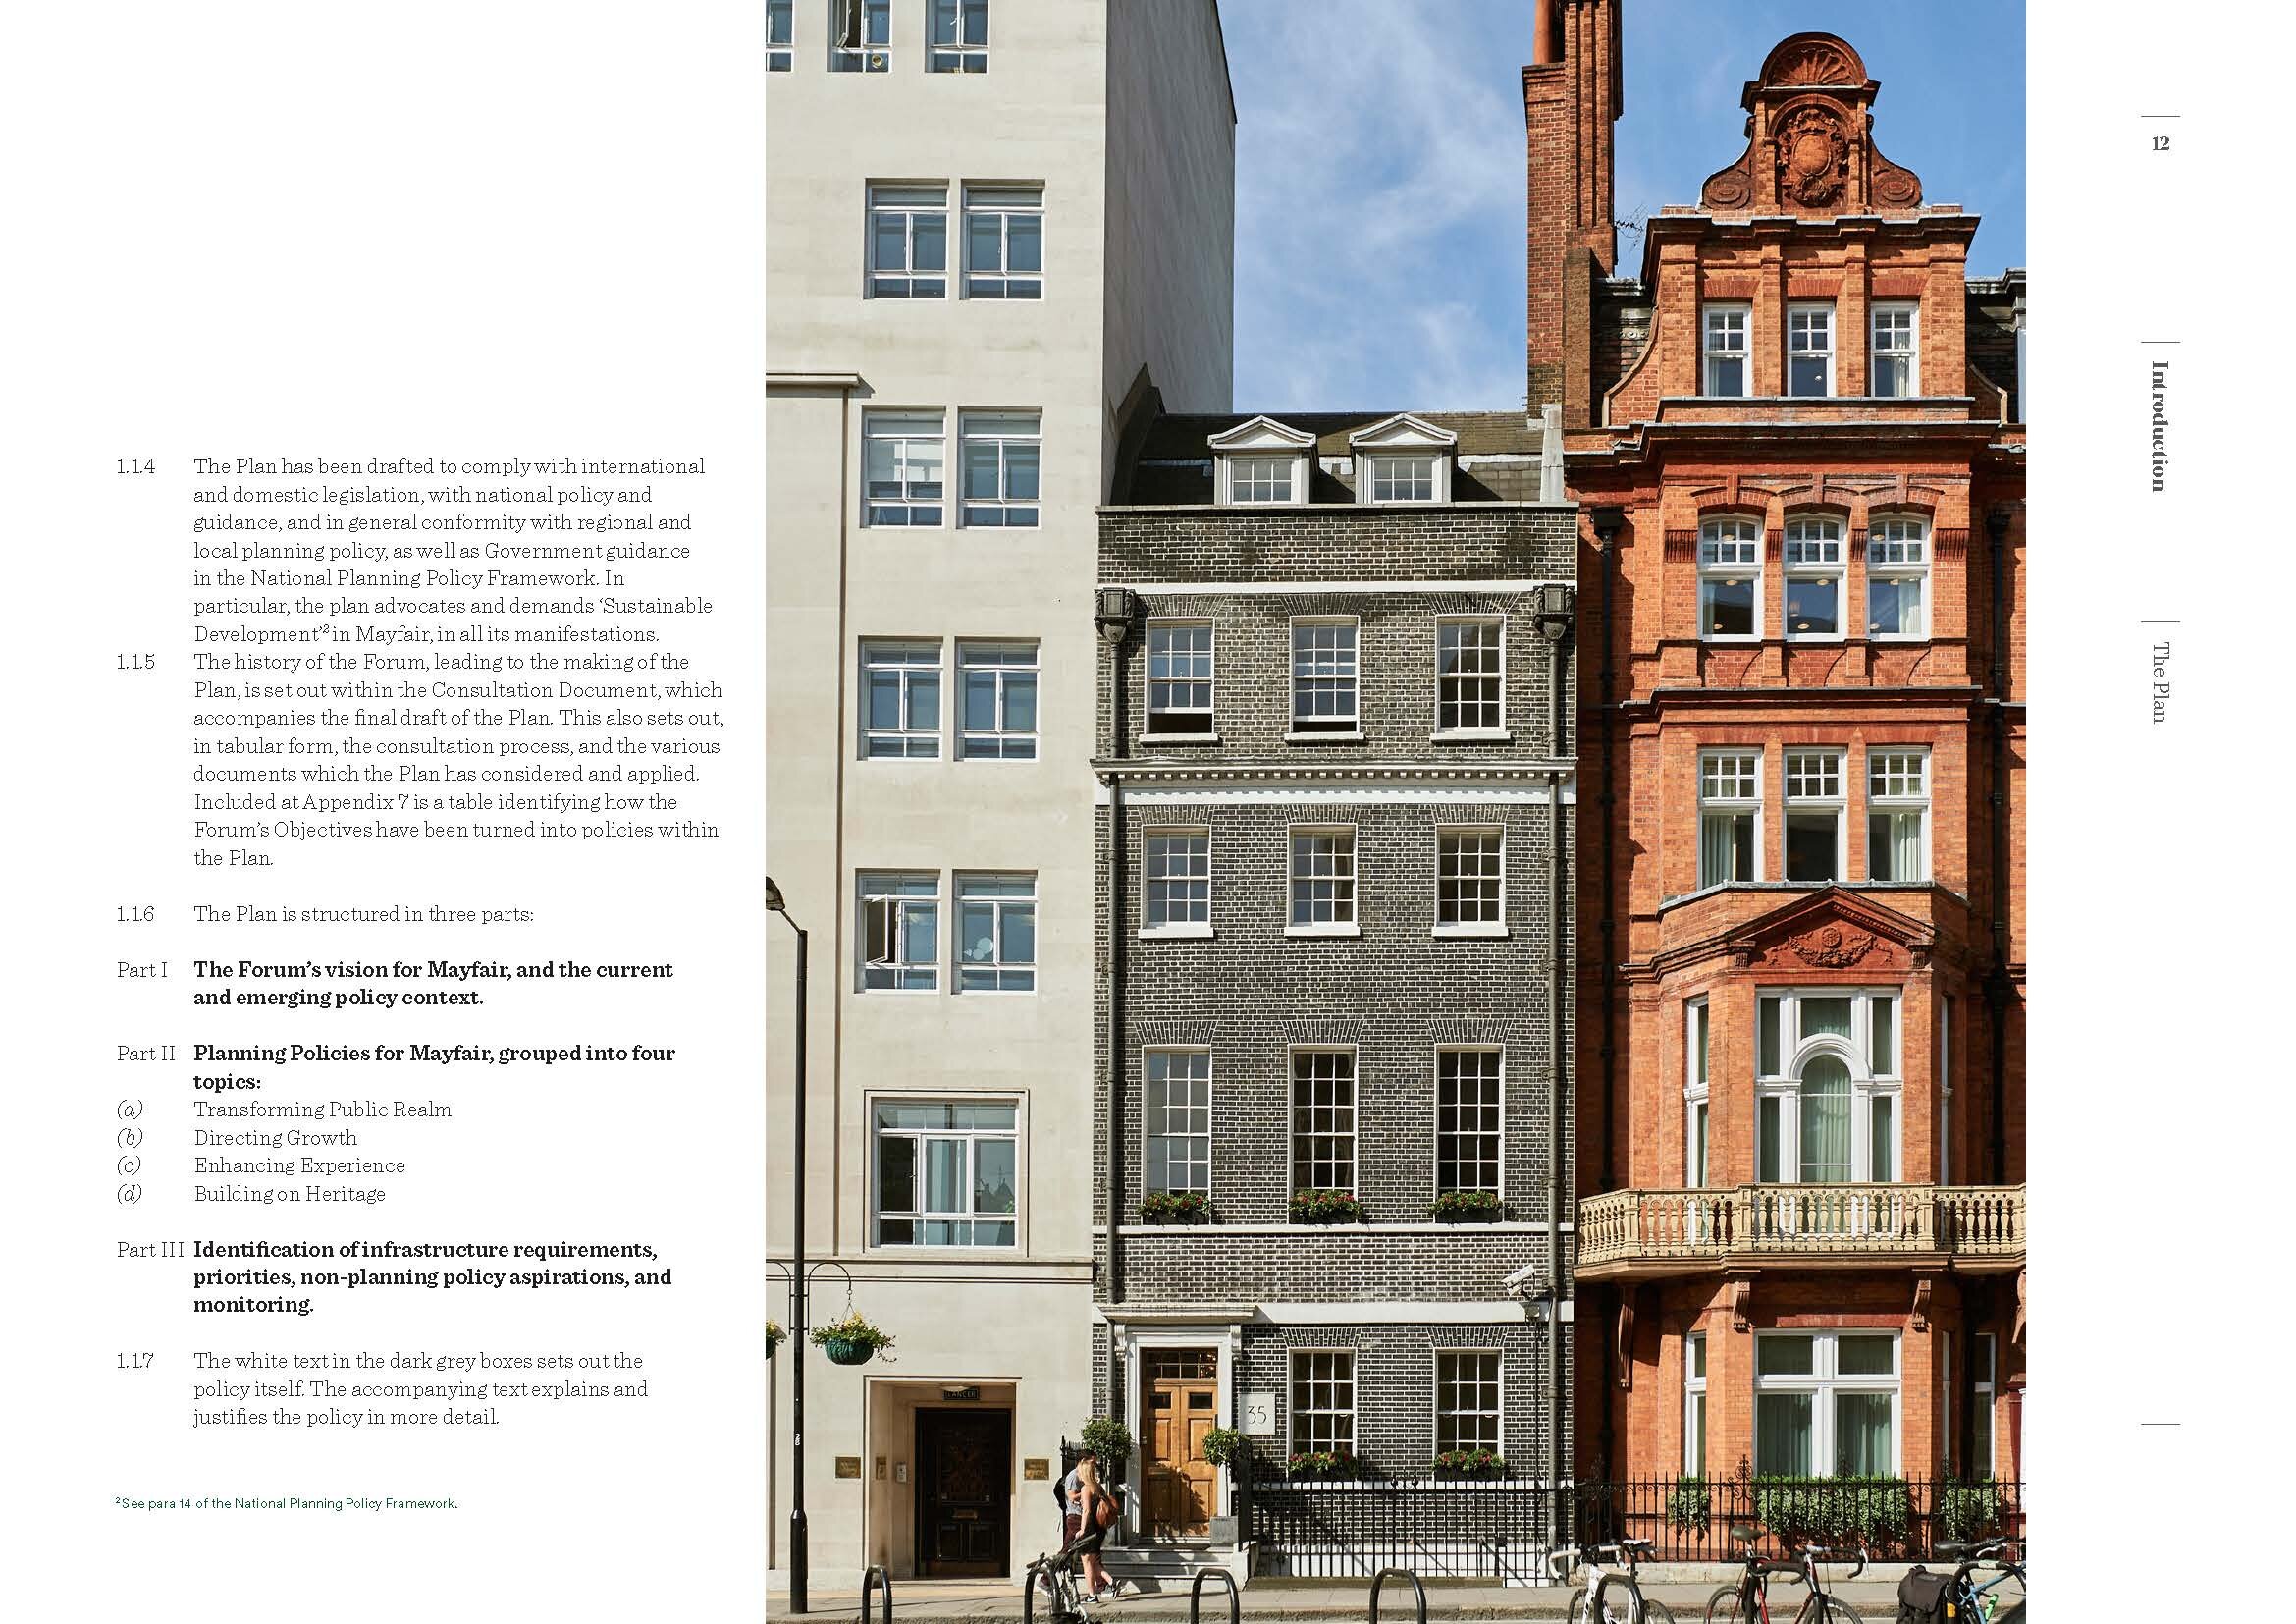    Neighbourhood Plan    - Mayfair, London UK  © HNNA Ltd 